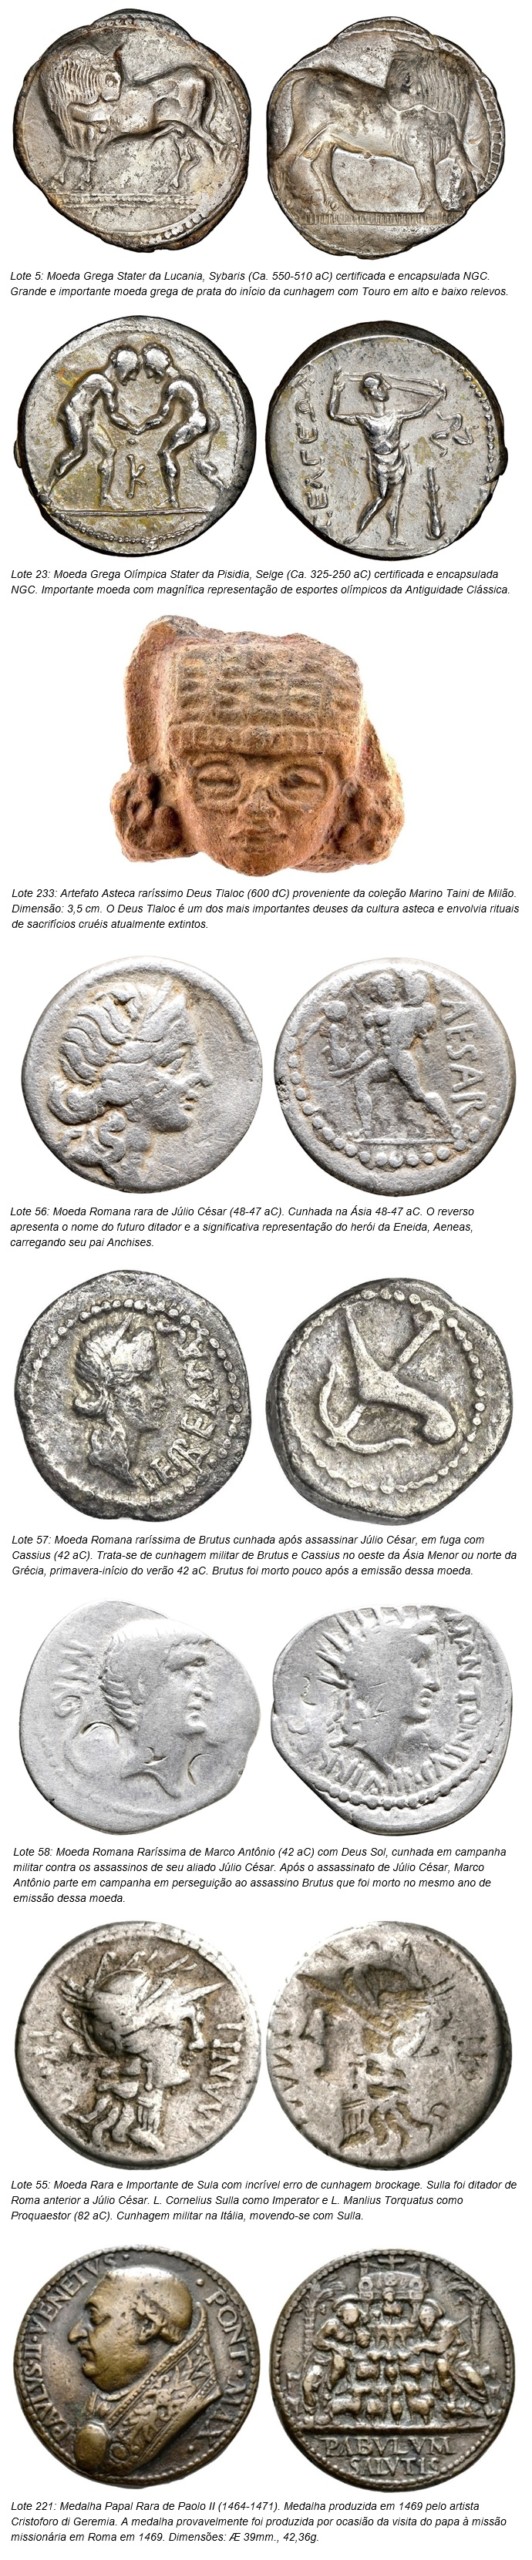 Δημοπρασίες Flávia Cardoso Soares: 5Uction Δημοπρασία νομισμάτων Conatus Coins και αντικείμενα κλασικής αρχαιότητας (Ελληνικά, Ρωμαίοι και Βυζαντινοί), κυριότερα σημεία. Αποκάλυψη.